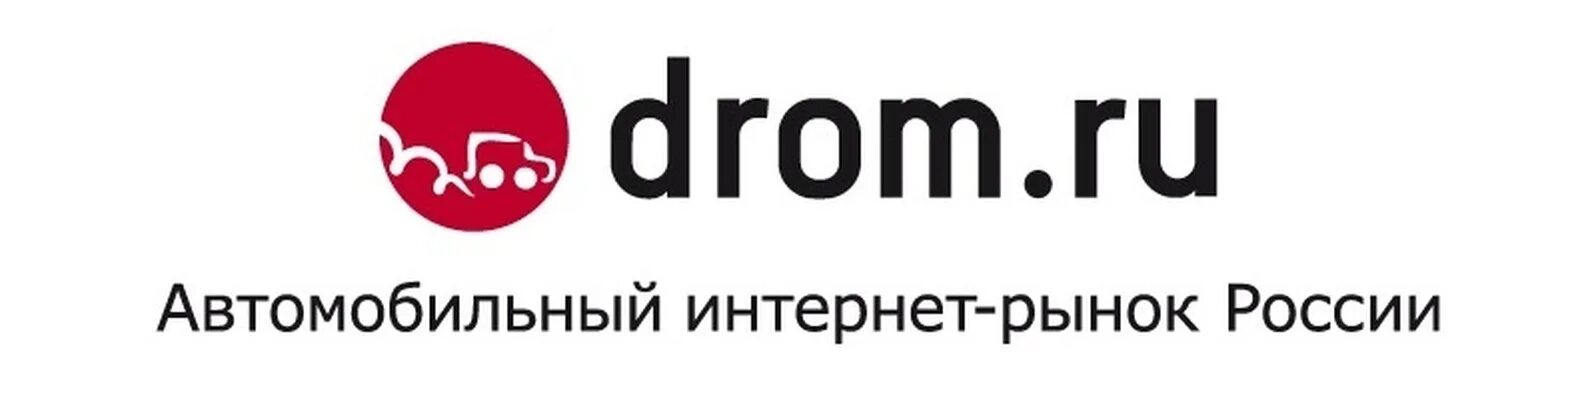 Дром ру. Drom.ru логотип. Дром картинки. Логотип дром логотип. Дром ру 3